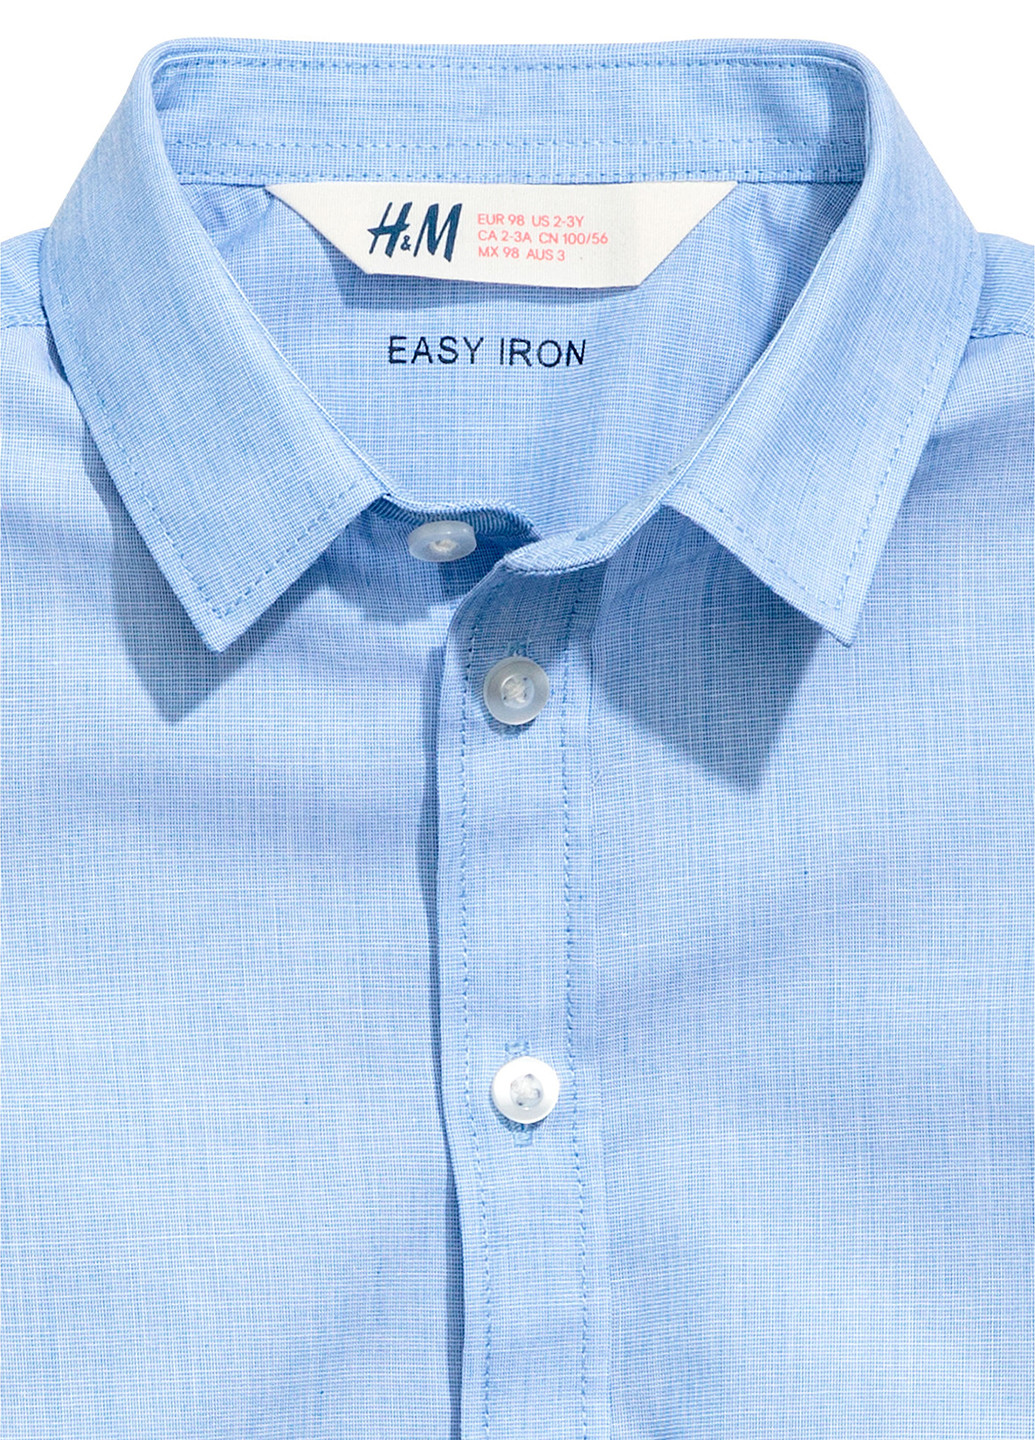 Светло-синяя классическая рубашка H&M с коротким рукавом